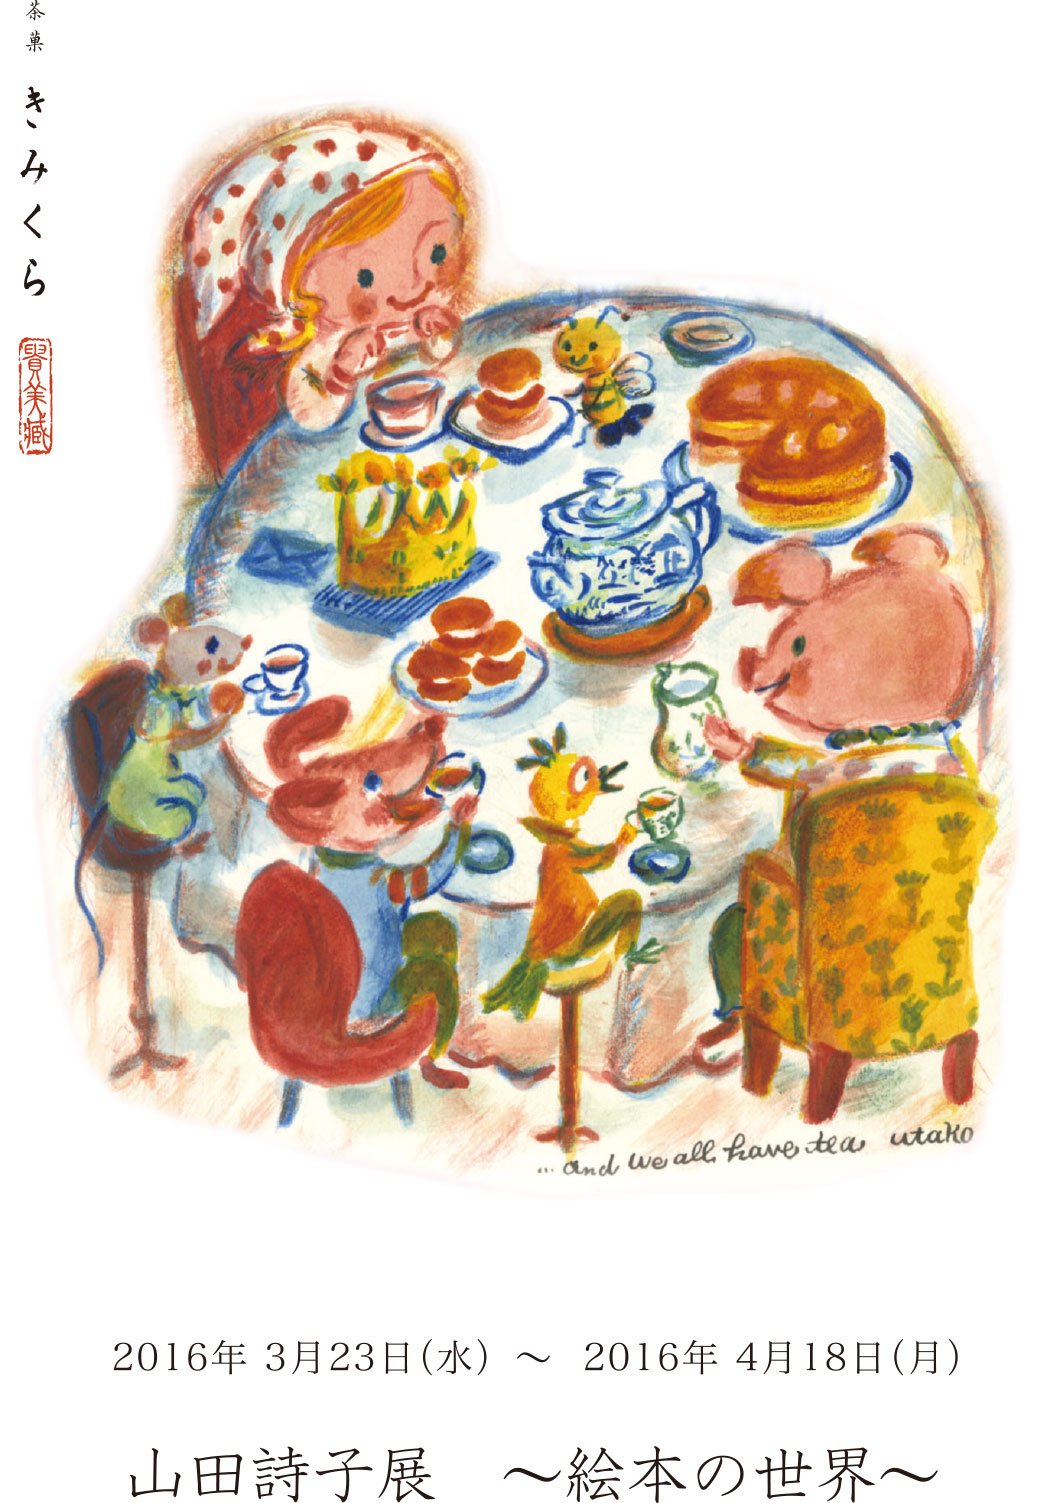 『山田詩子展 ～絵本の世界～』を「茶菓子 きみくら」（静岡県掛川市）にて開催いたします